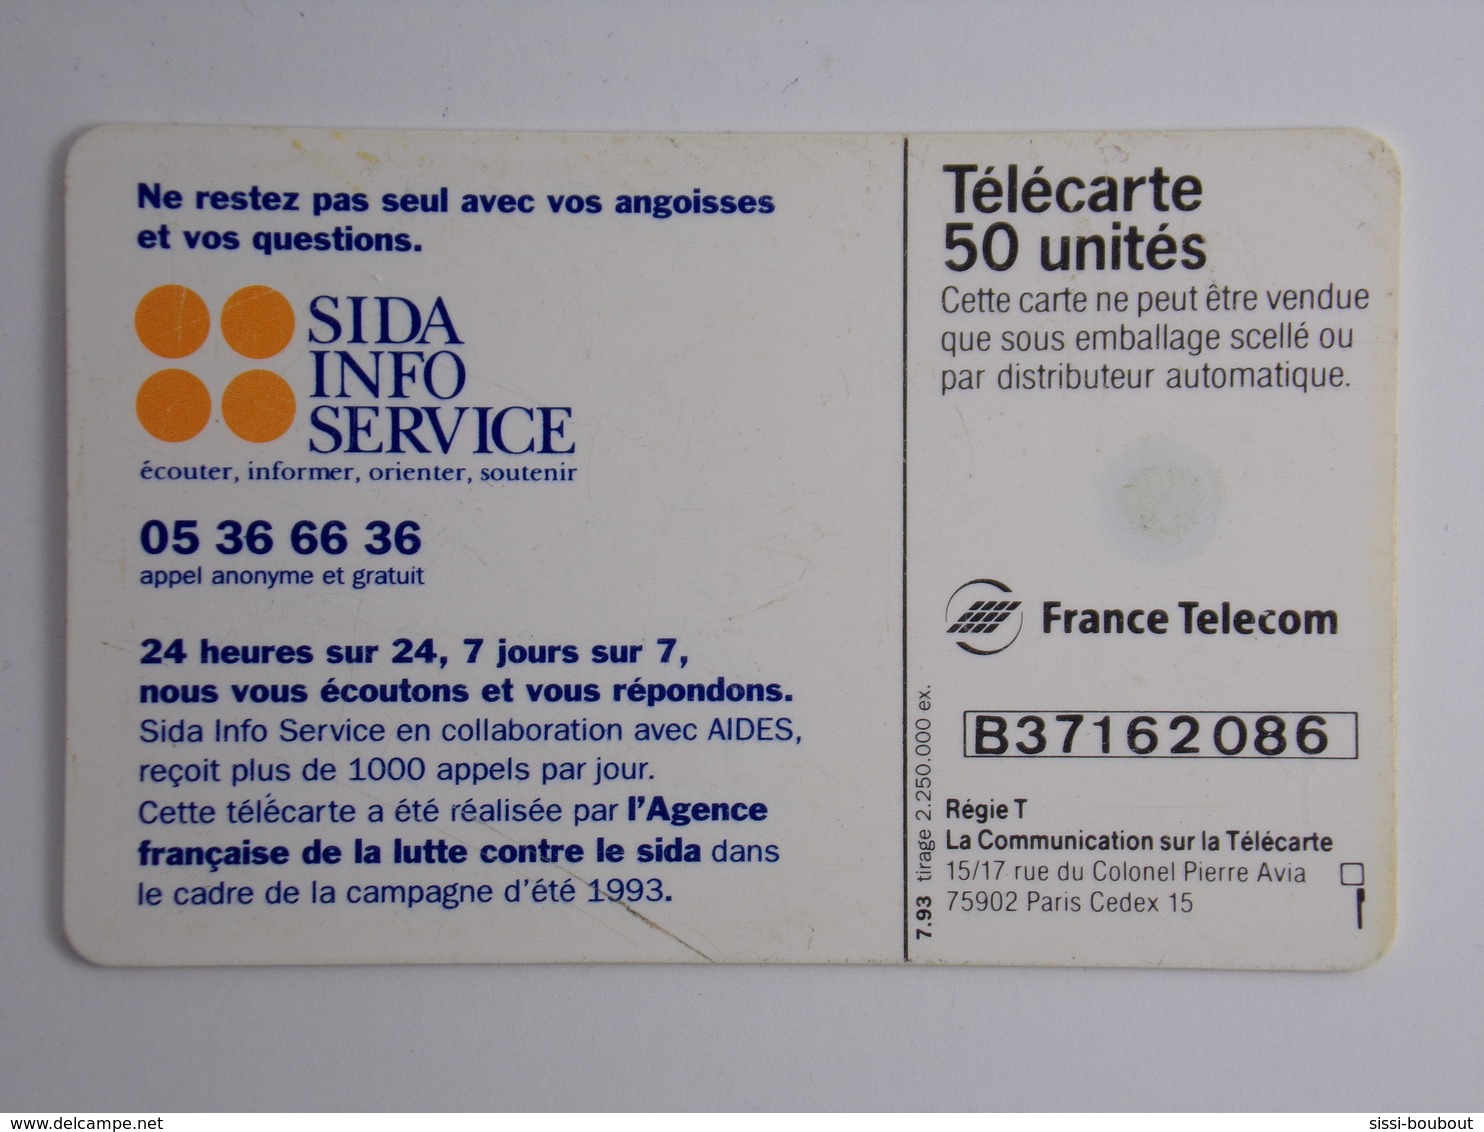 Télécarte - Les Préservatifs Aujourd'hui, Tout Le Monde Dit Oui ! - 1993 - Cultural